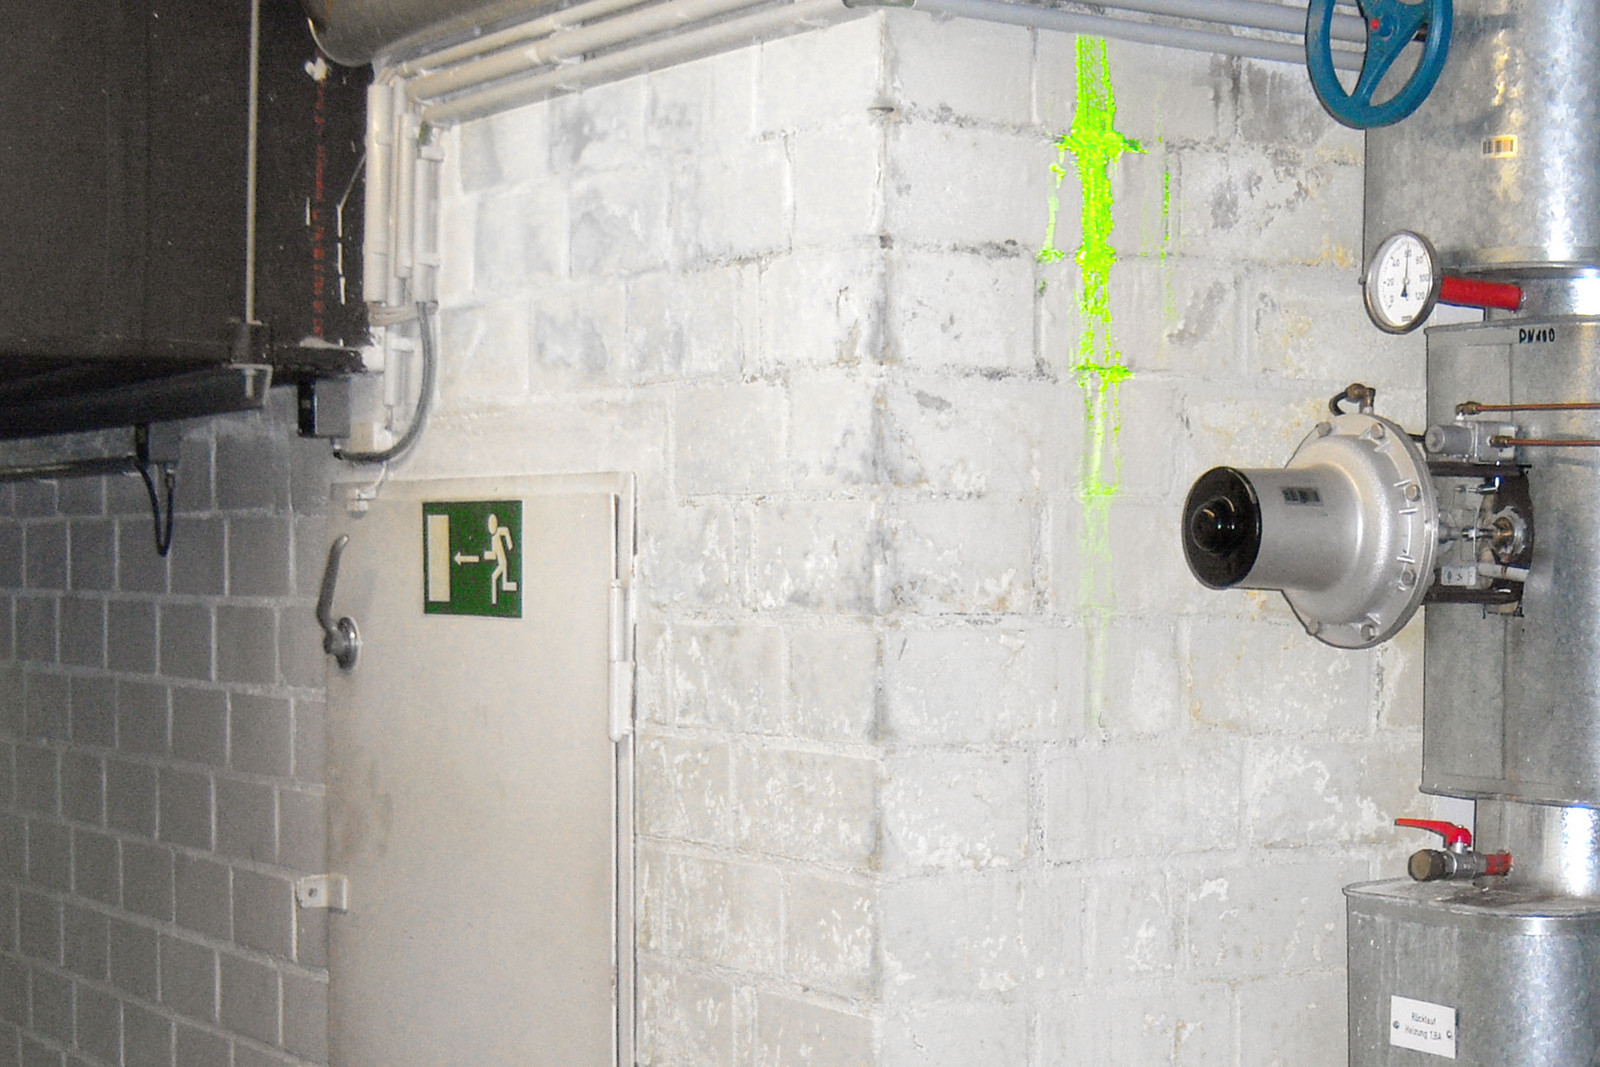 Lokaliseren van een lekkende watervoerende leiding in een gebouw via uranine-inspuiting en UV-inspectie.